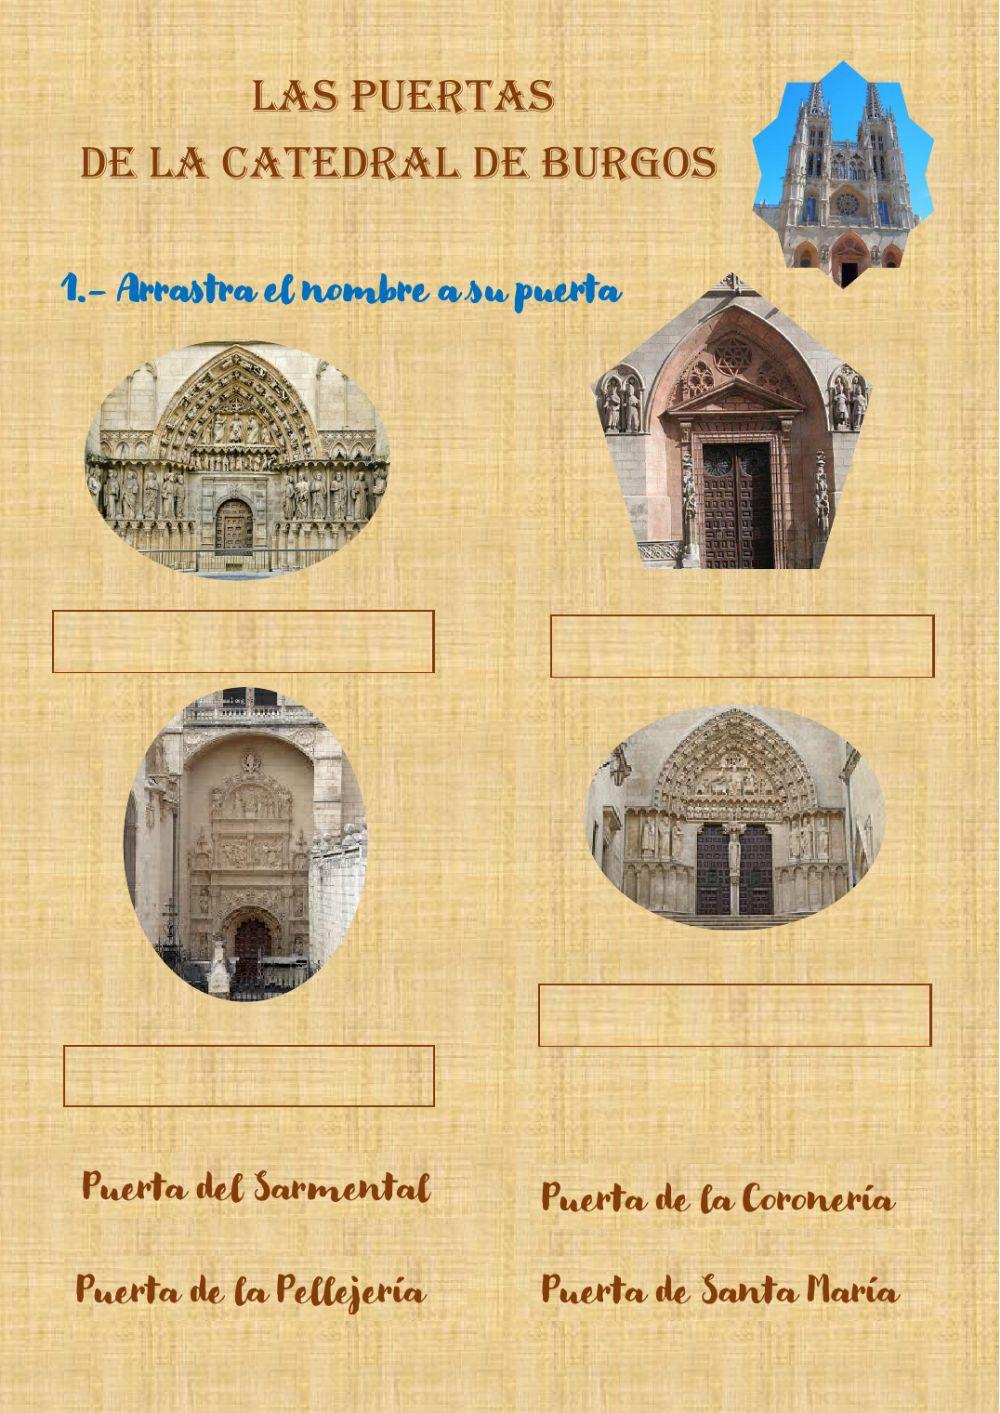 Las puertas de la Catedral de Burgos